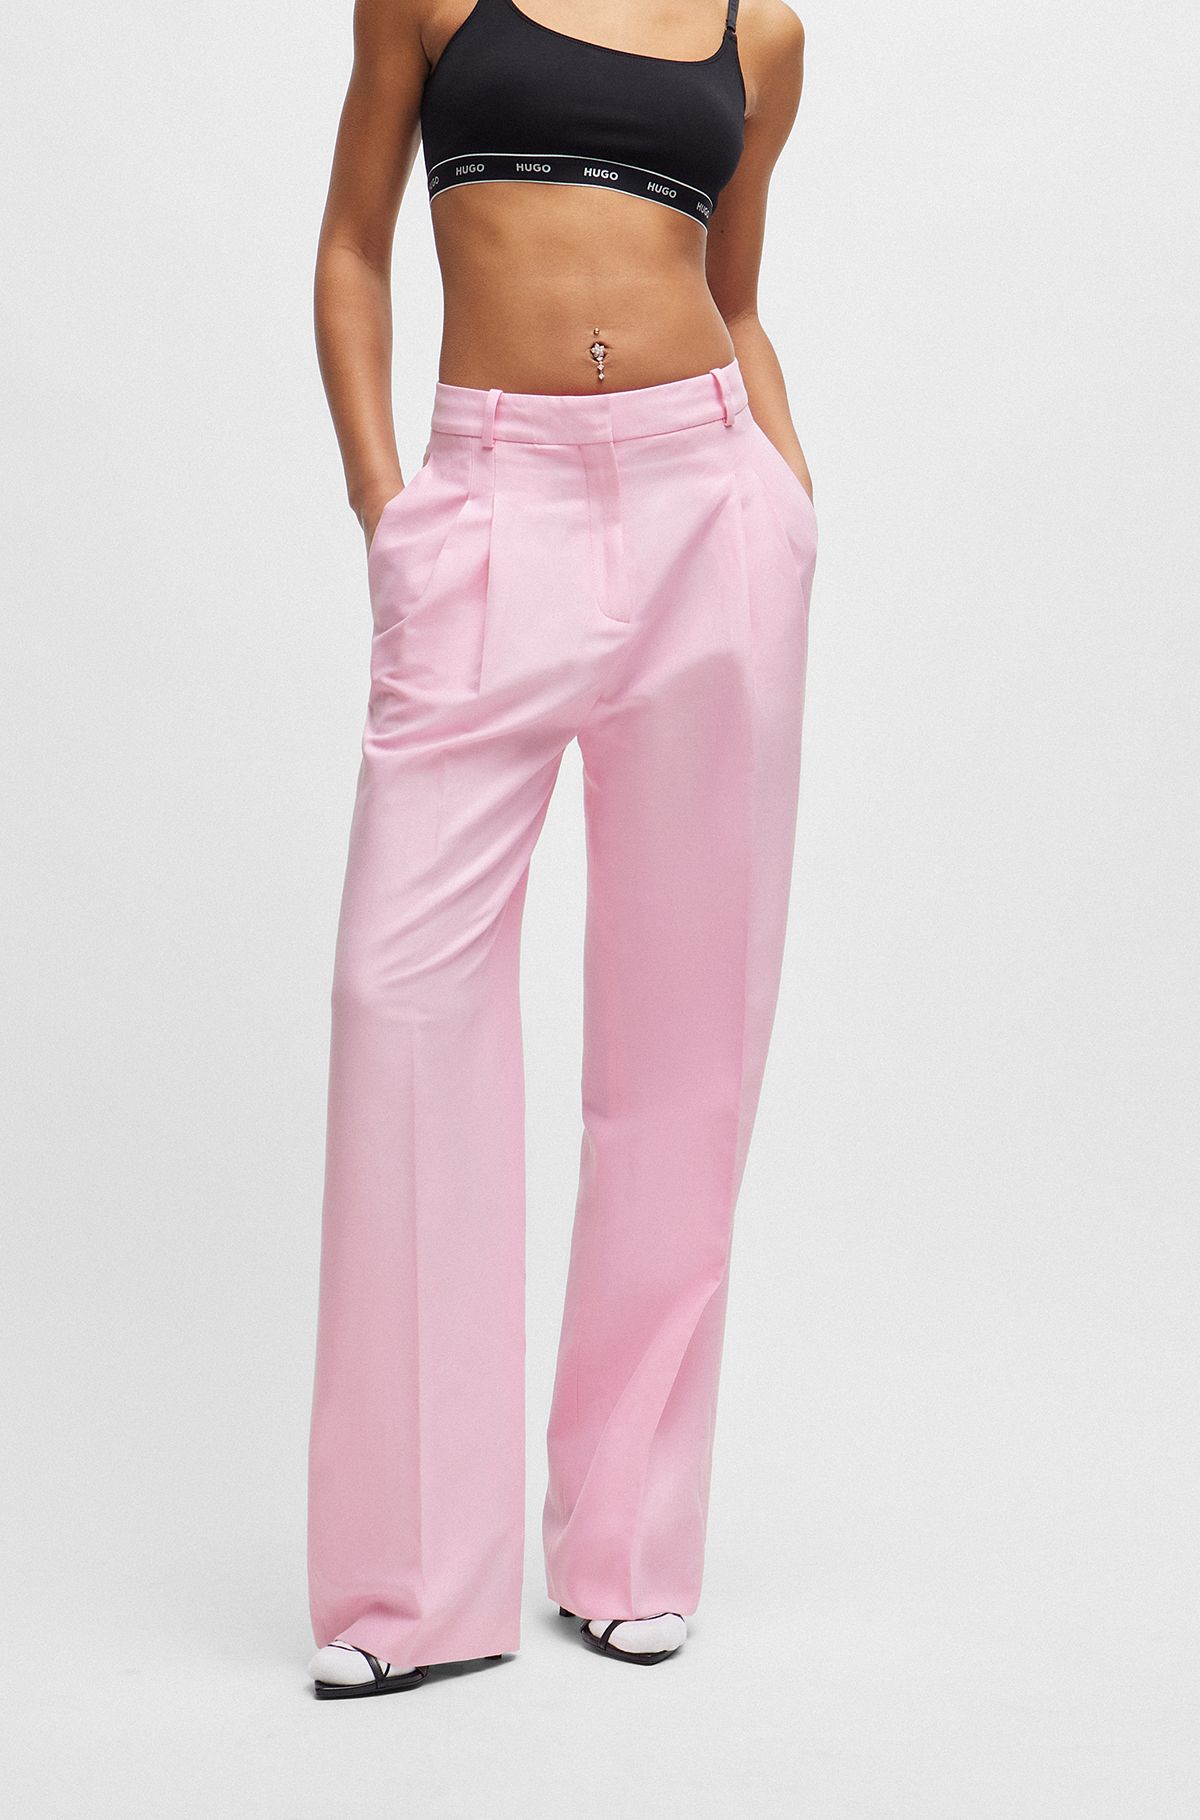 Pinker Hosenanzug für Frauen, rosa ausgestellter Hosenanzug mit tailliertem  Blazer, rosa formale Blazer-Hose für Frauen, formelle Damenbekleidung -   Österreich